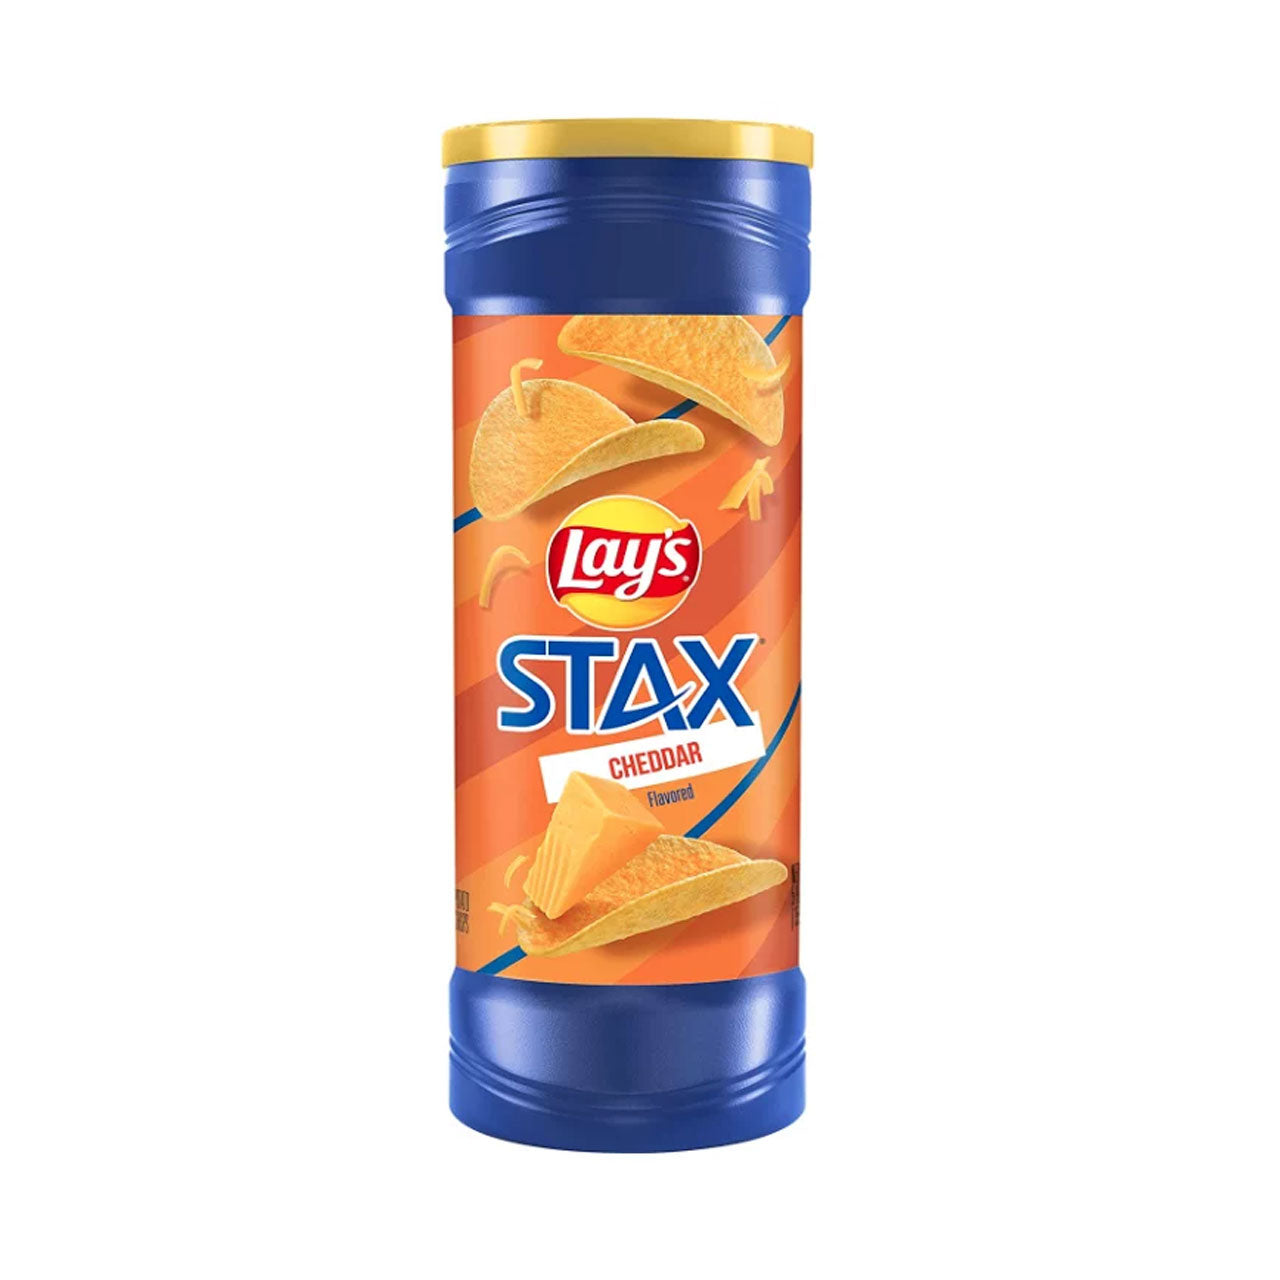 Lays Stax - Cheddar